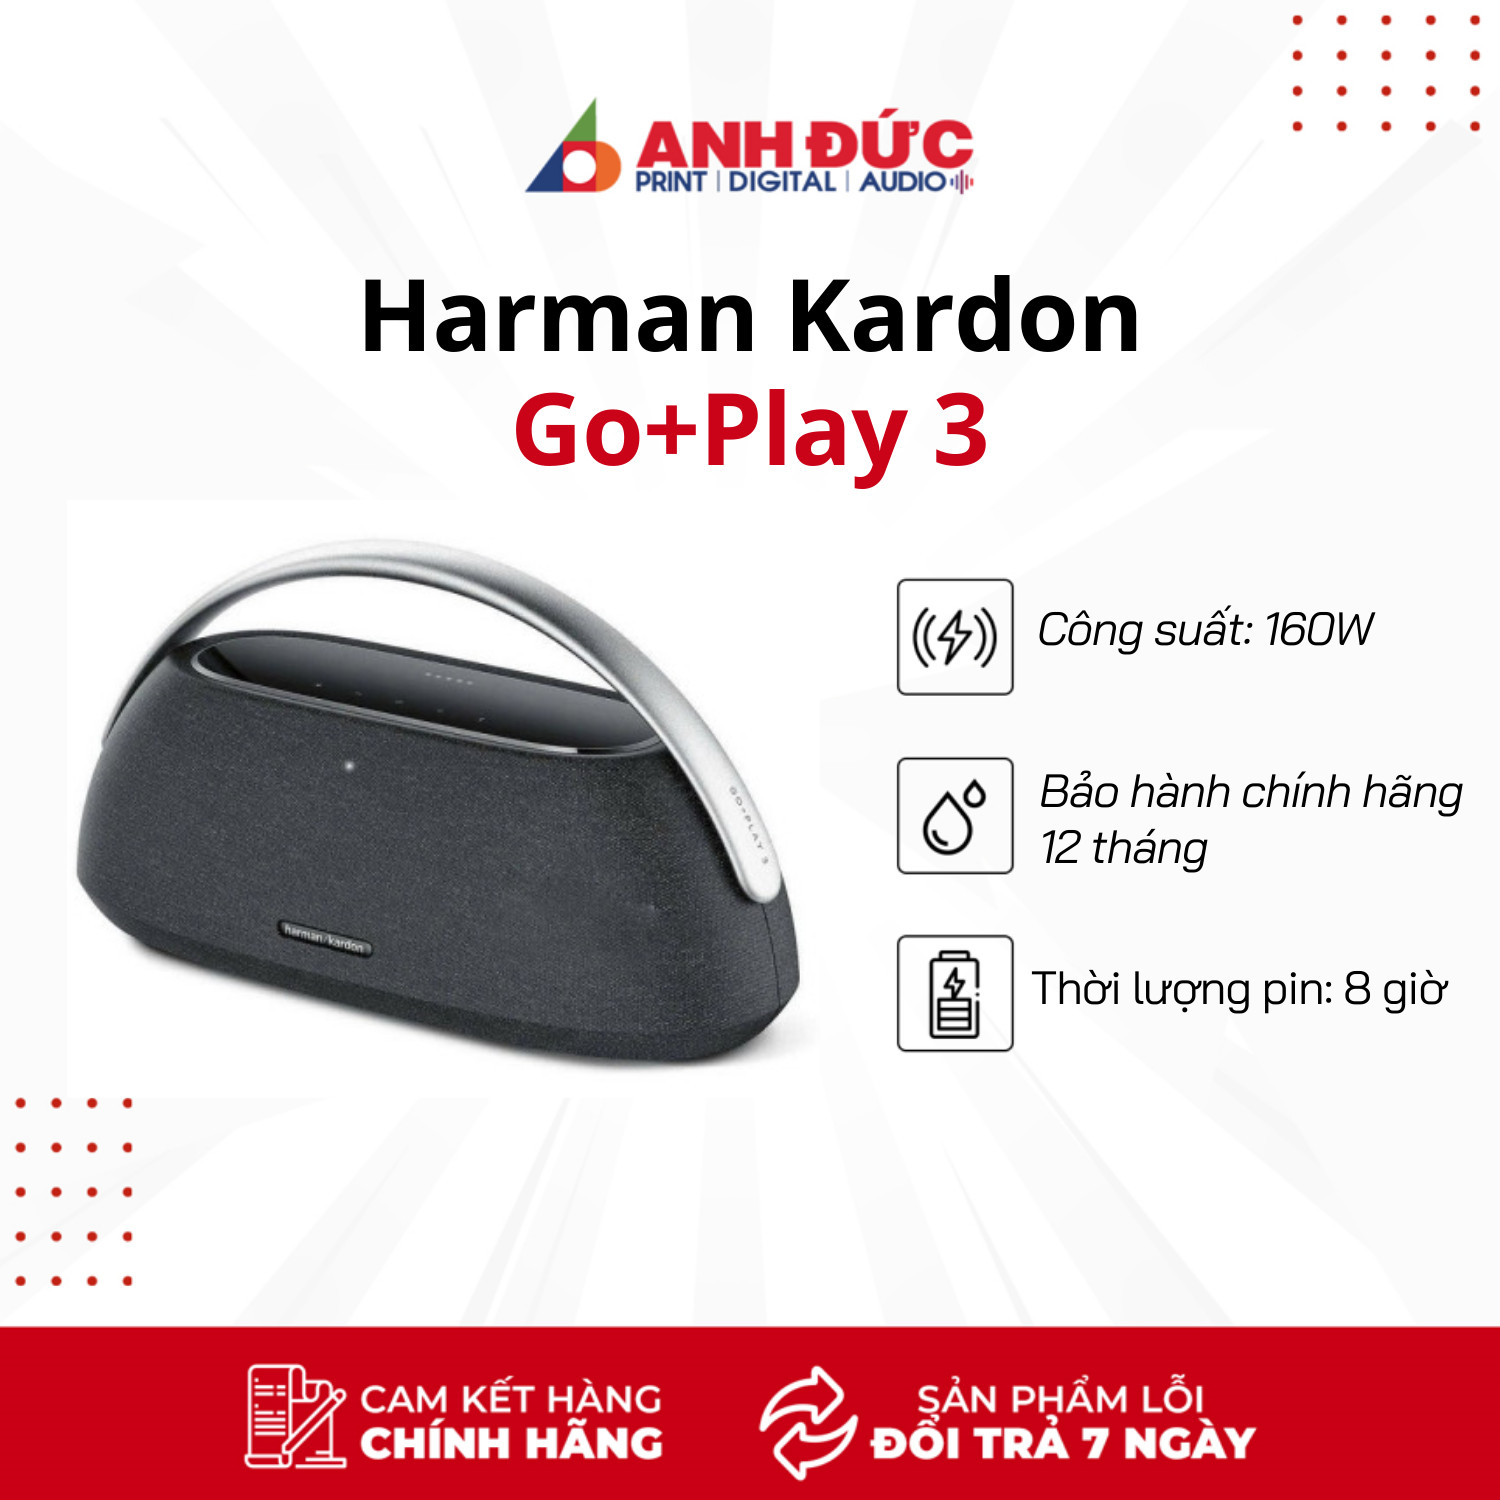 Loa Harman Kardon Go Play 3 (Công suất 160W) - Hàng Chính Hãng PGI